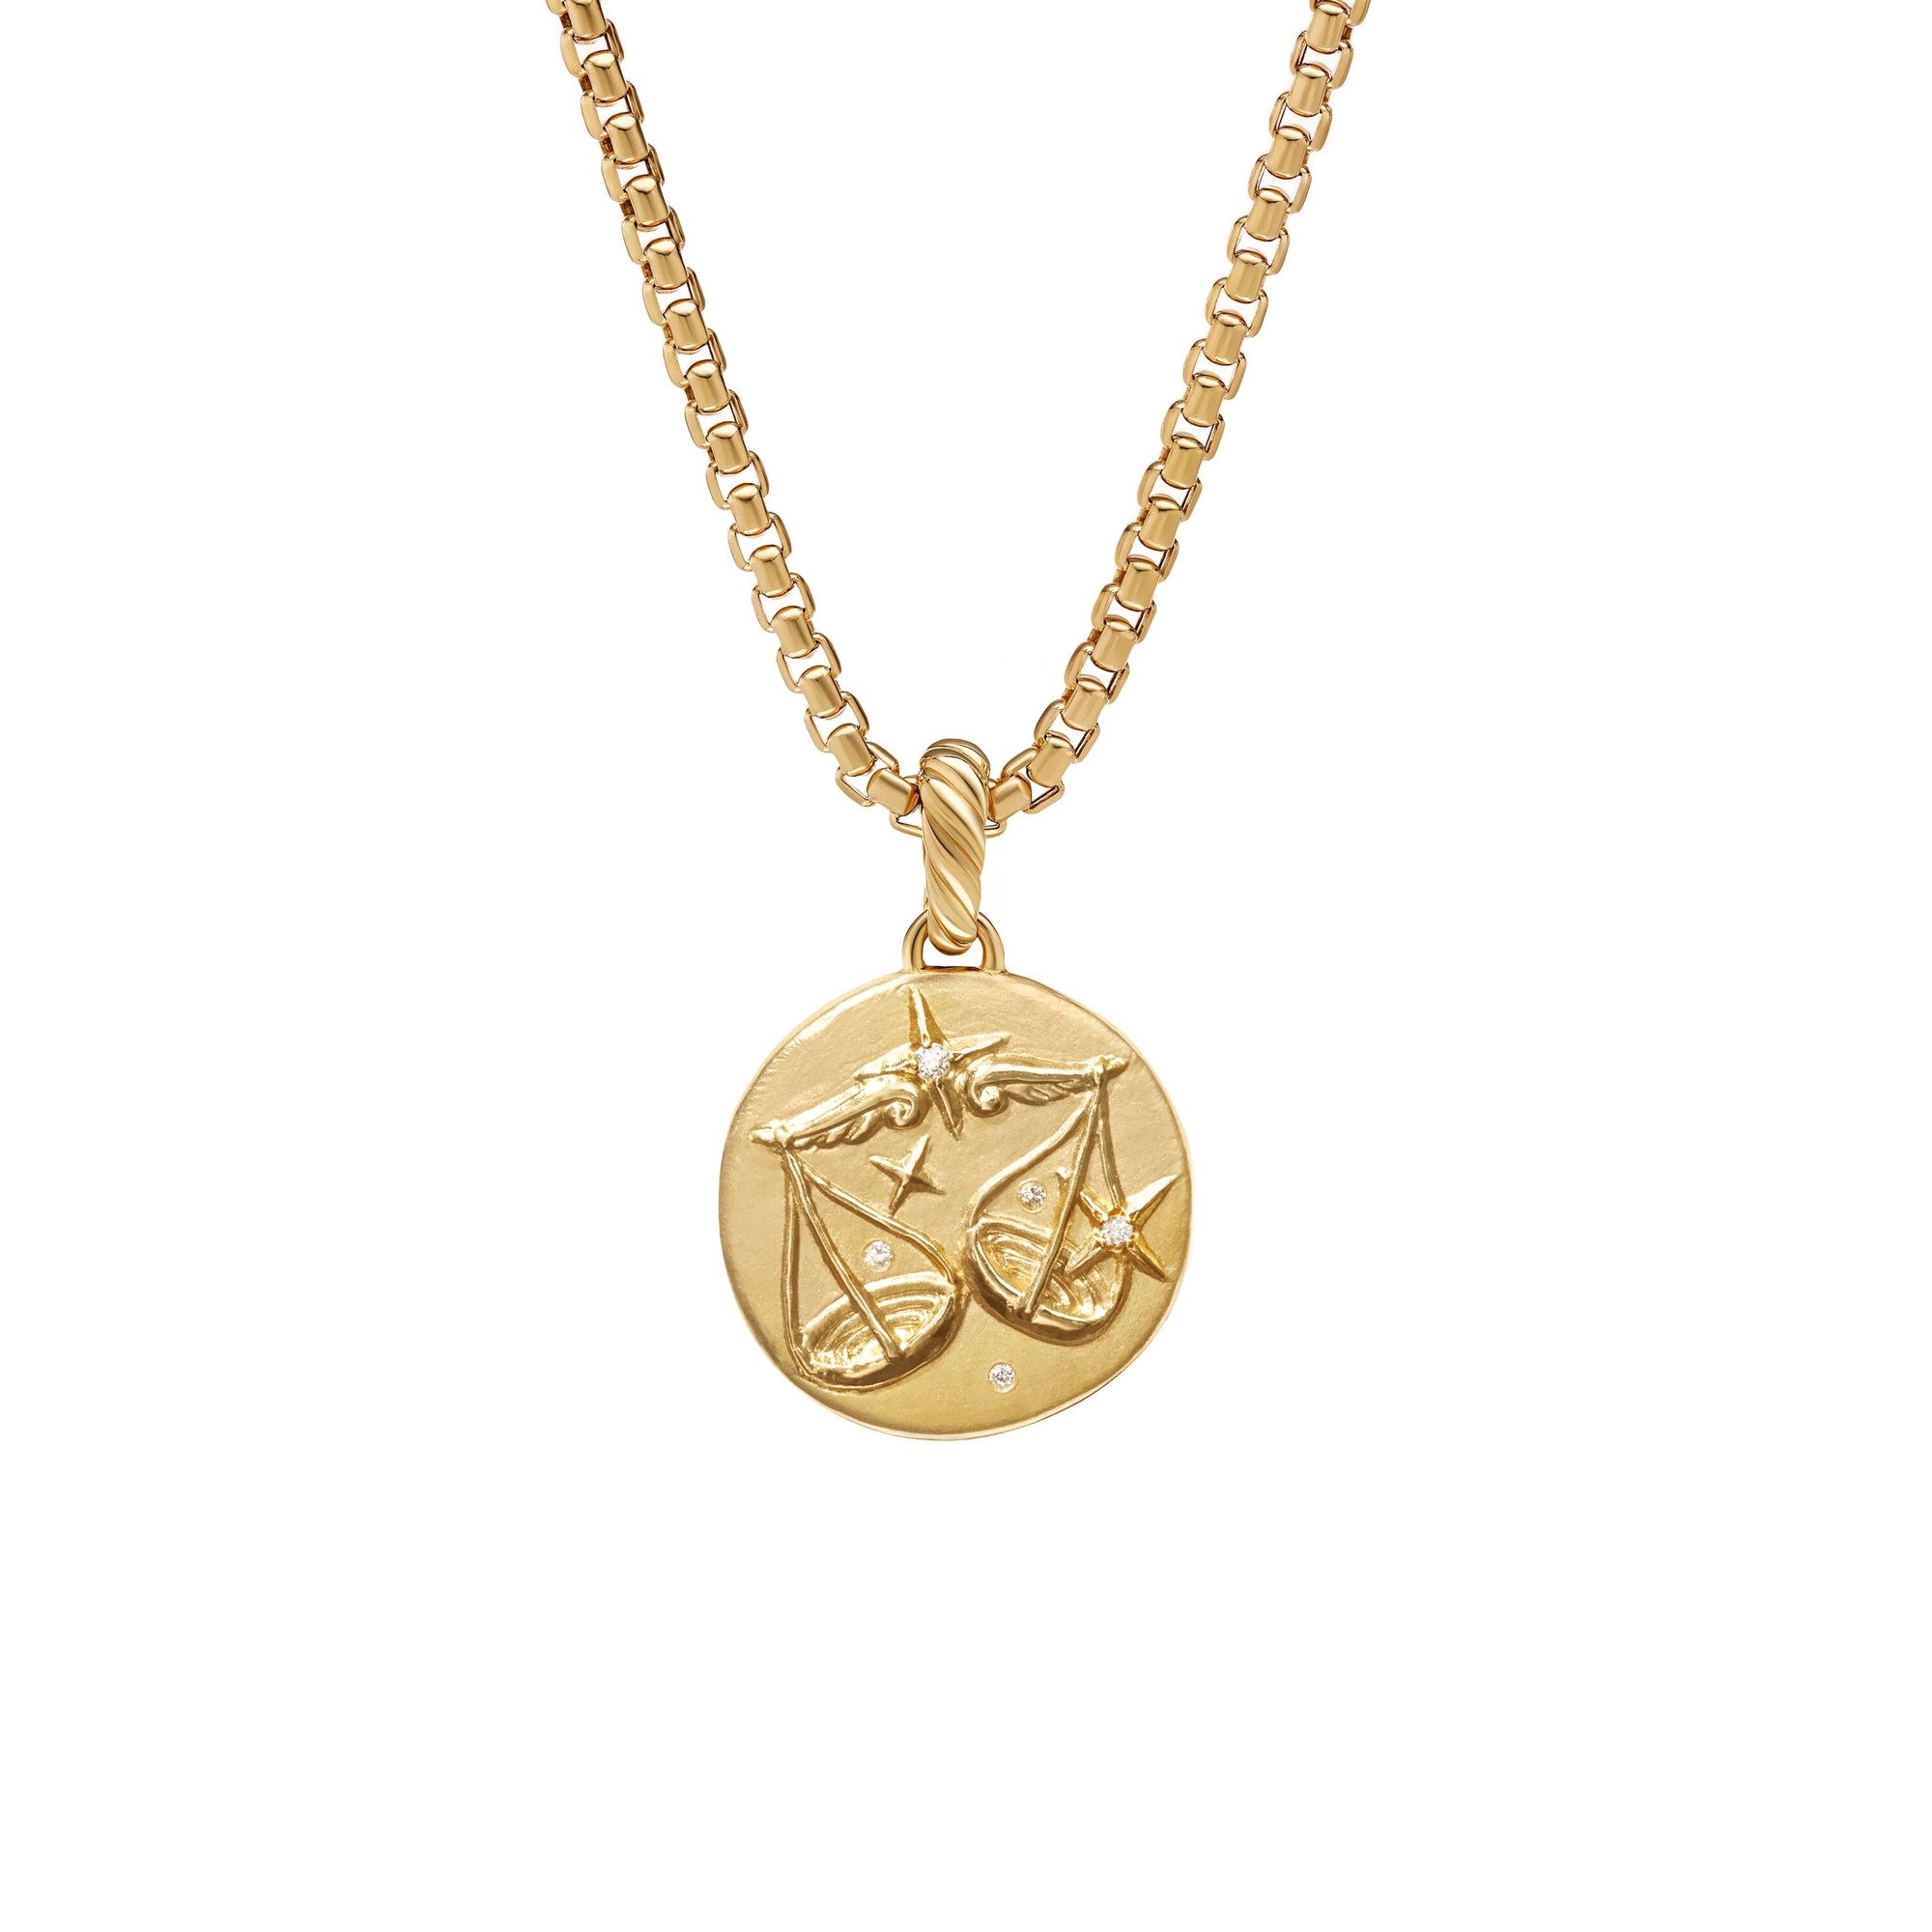 David Yurman Gold and Diamond Libra Amulet, $1,950